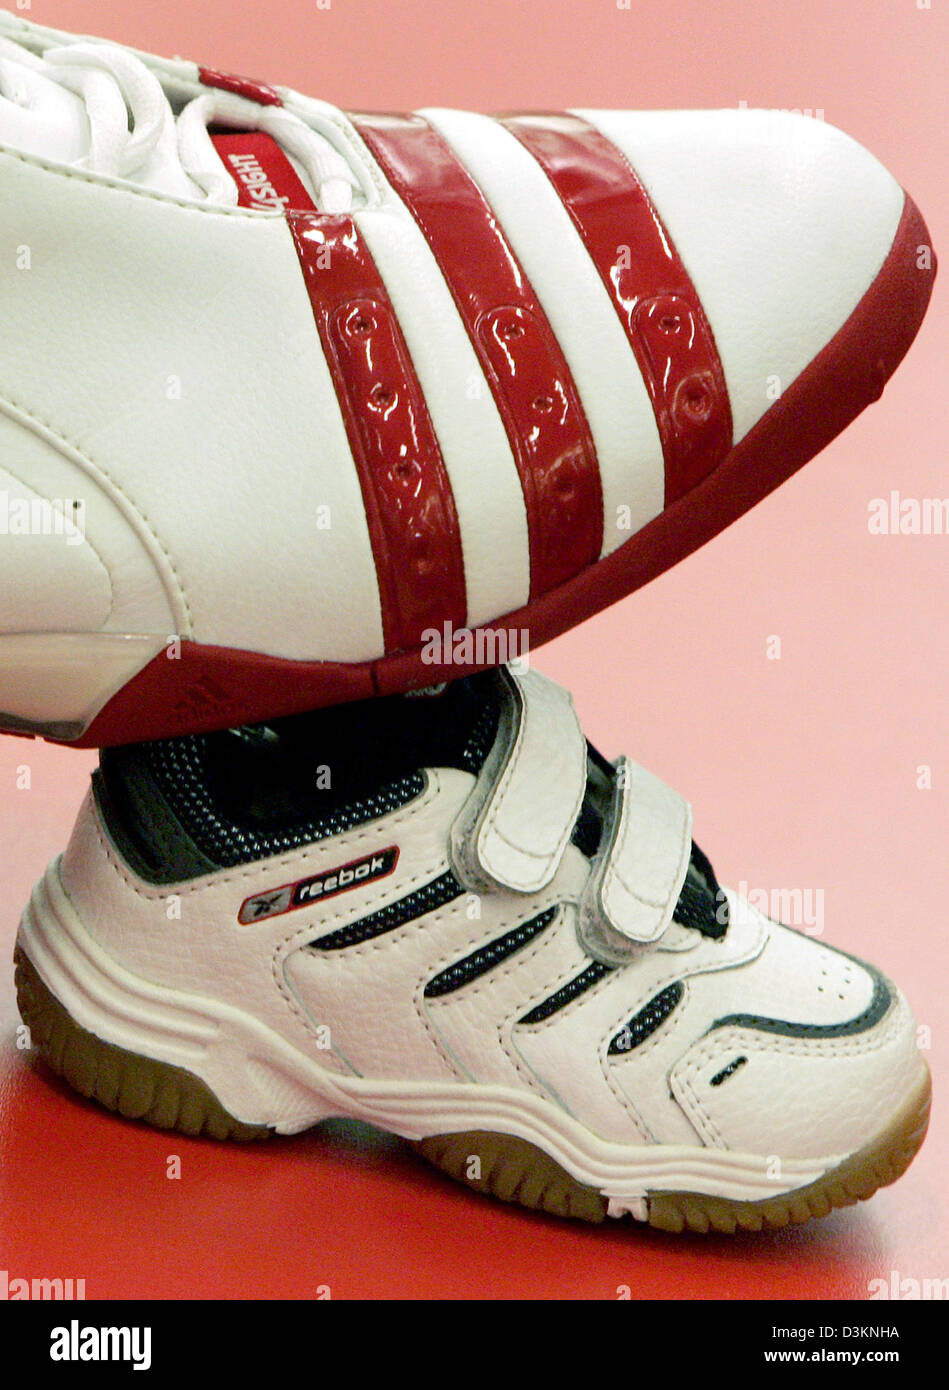 Kindercentrum stof in de ogen gooien stoom Dpa) - das Bild zeigt eine Adidas Basketballsneaker auf einem Reebok Baby  Sneaker in ein Sportgeschäft in Frankfurt Main, Deutschland, Mittwoch, 3.  August 2005. Um die Lücke zu weltweit führenden Sportartikel erwarb